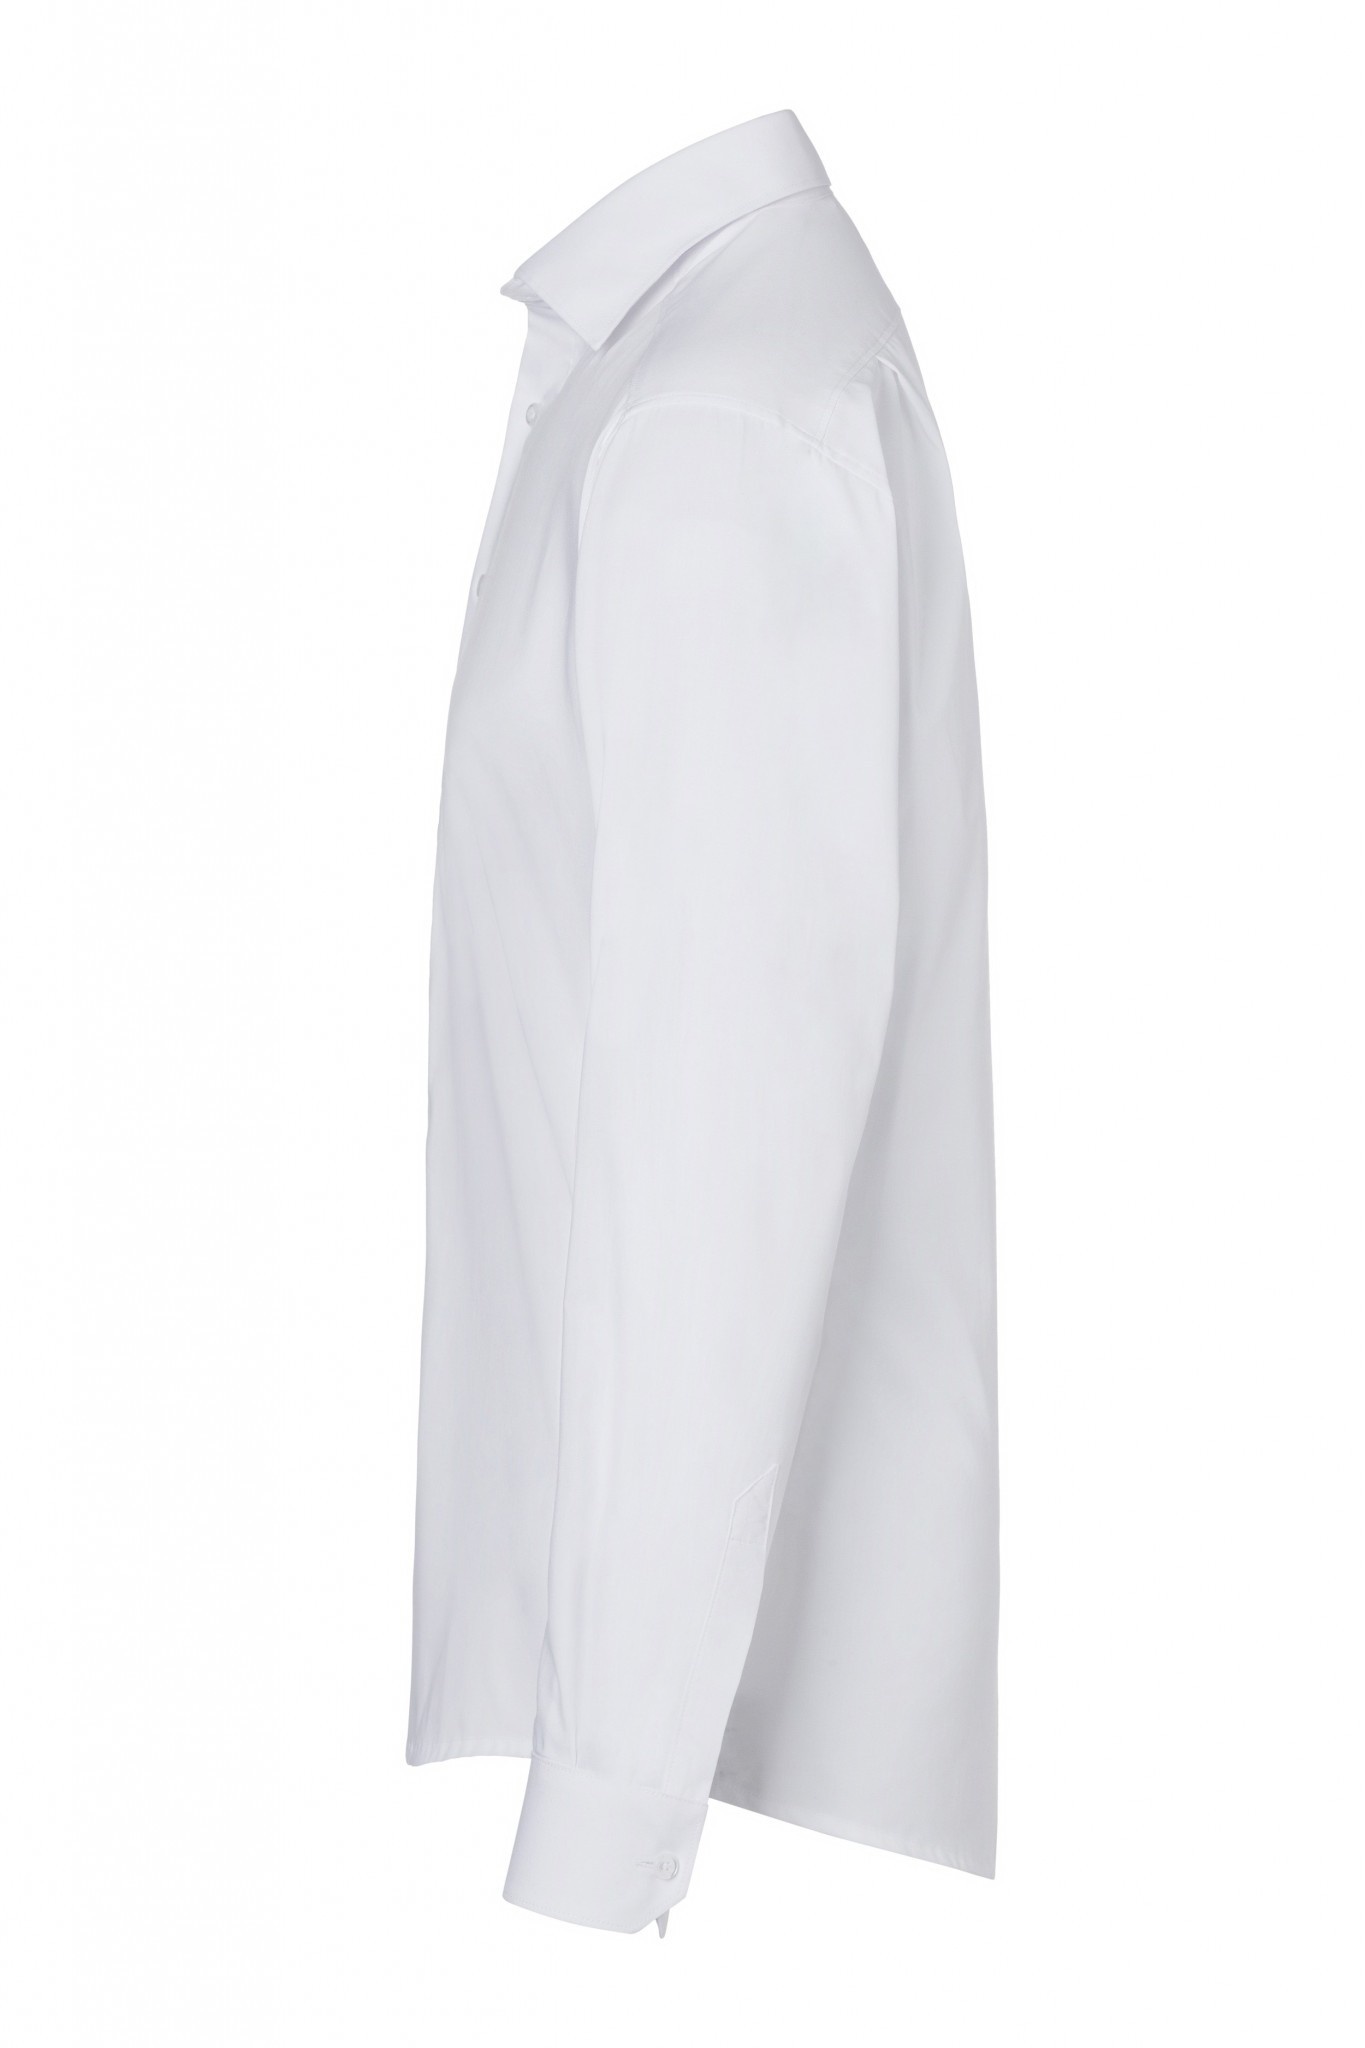 Herrenhemd Miro | Weiß | 49% Polyester / 49% Baumwolle / 2% Elastolefin | Erhältlich in 8 Größen